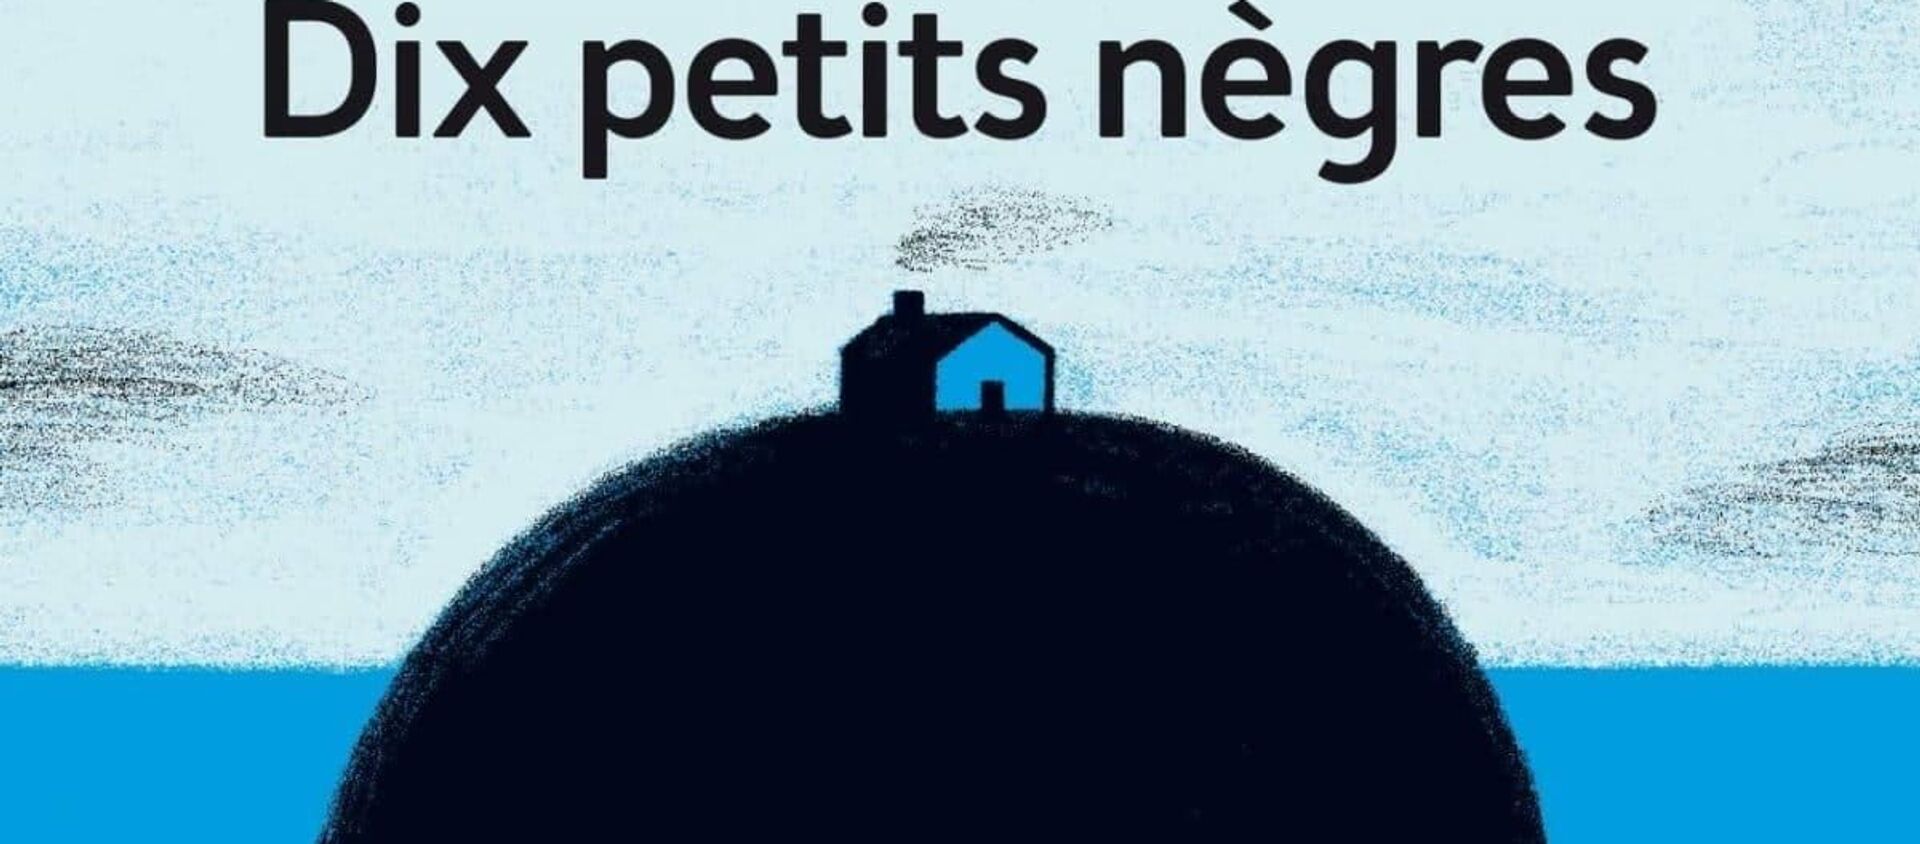 Fransa'da 'Dix Petits Negres' ismiyle yayımlanan Agatha Christie romanının kapağı - Sputnik Türkiye, 1920, 26.08.2020